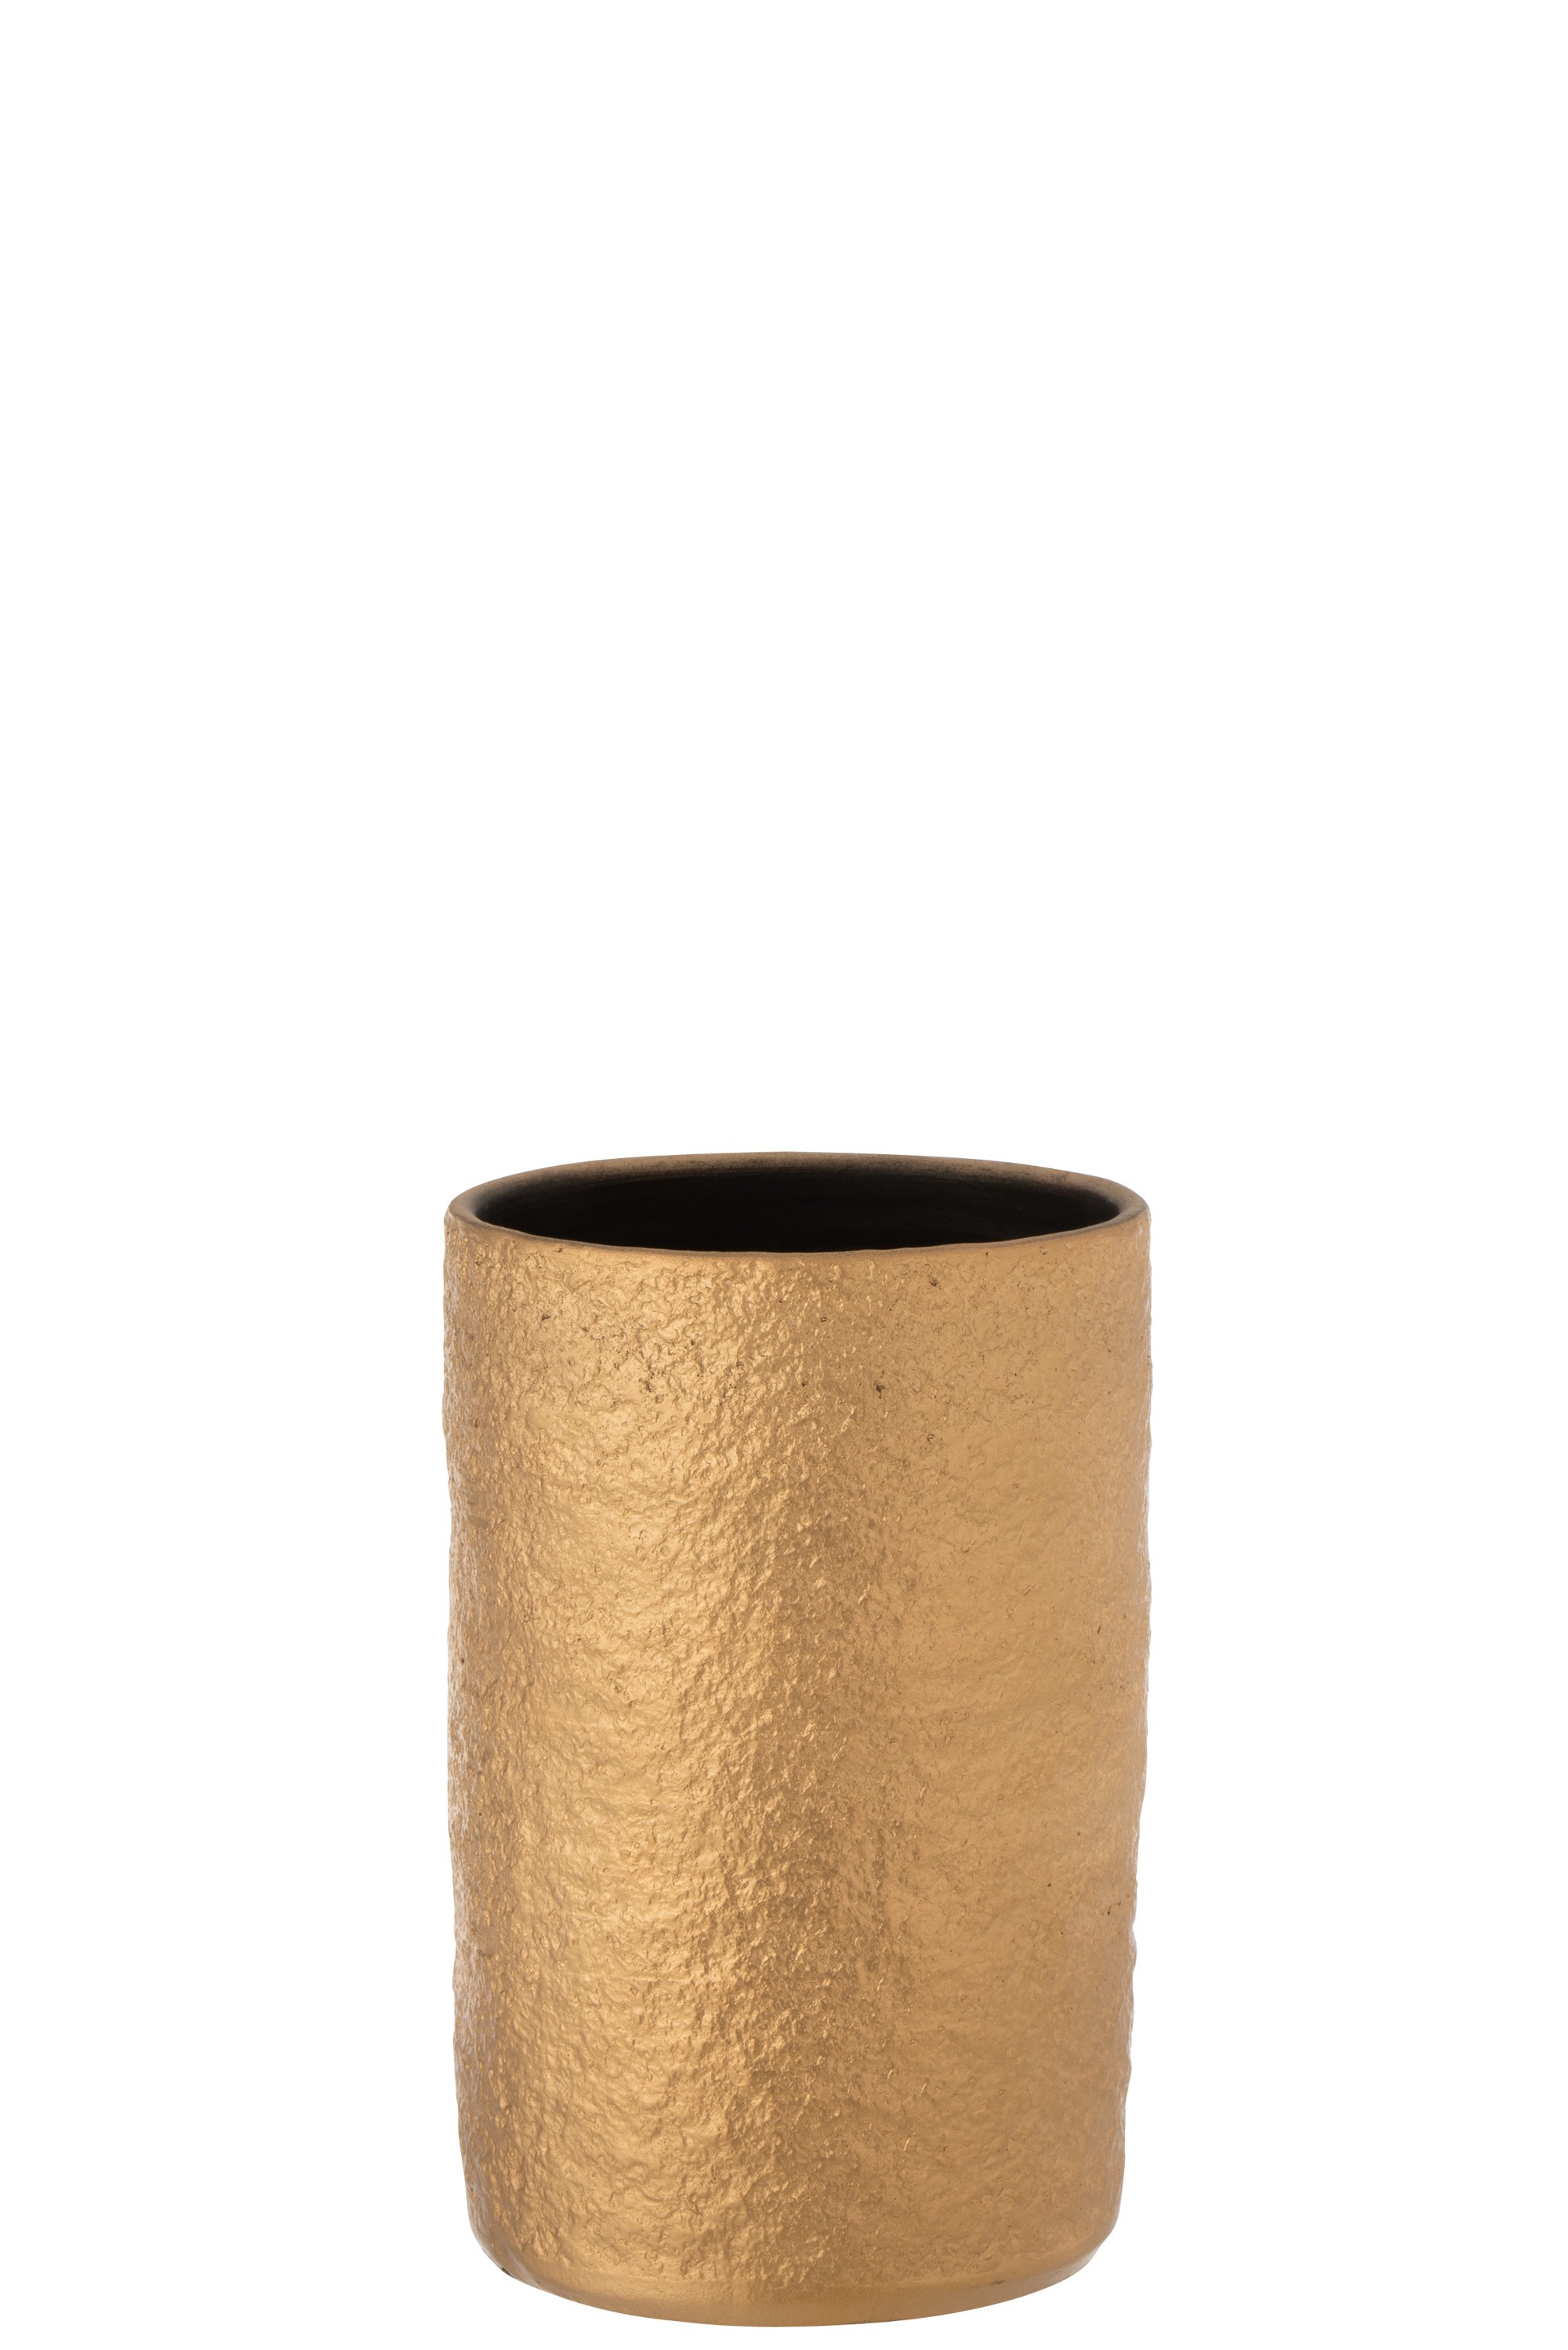 Zlatá keramická váza Gatsby - Ø14*22 cm 7159